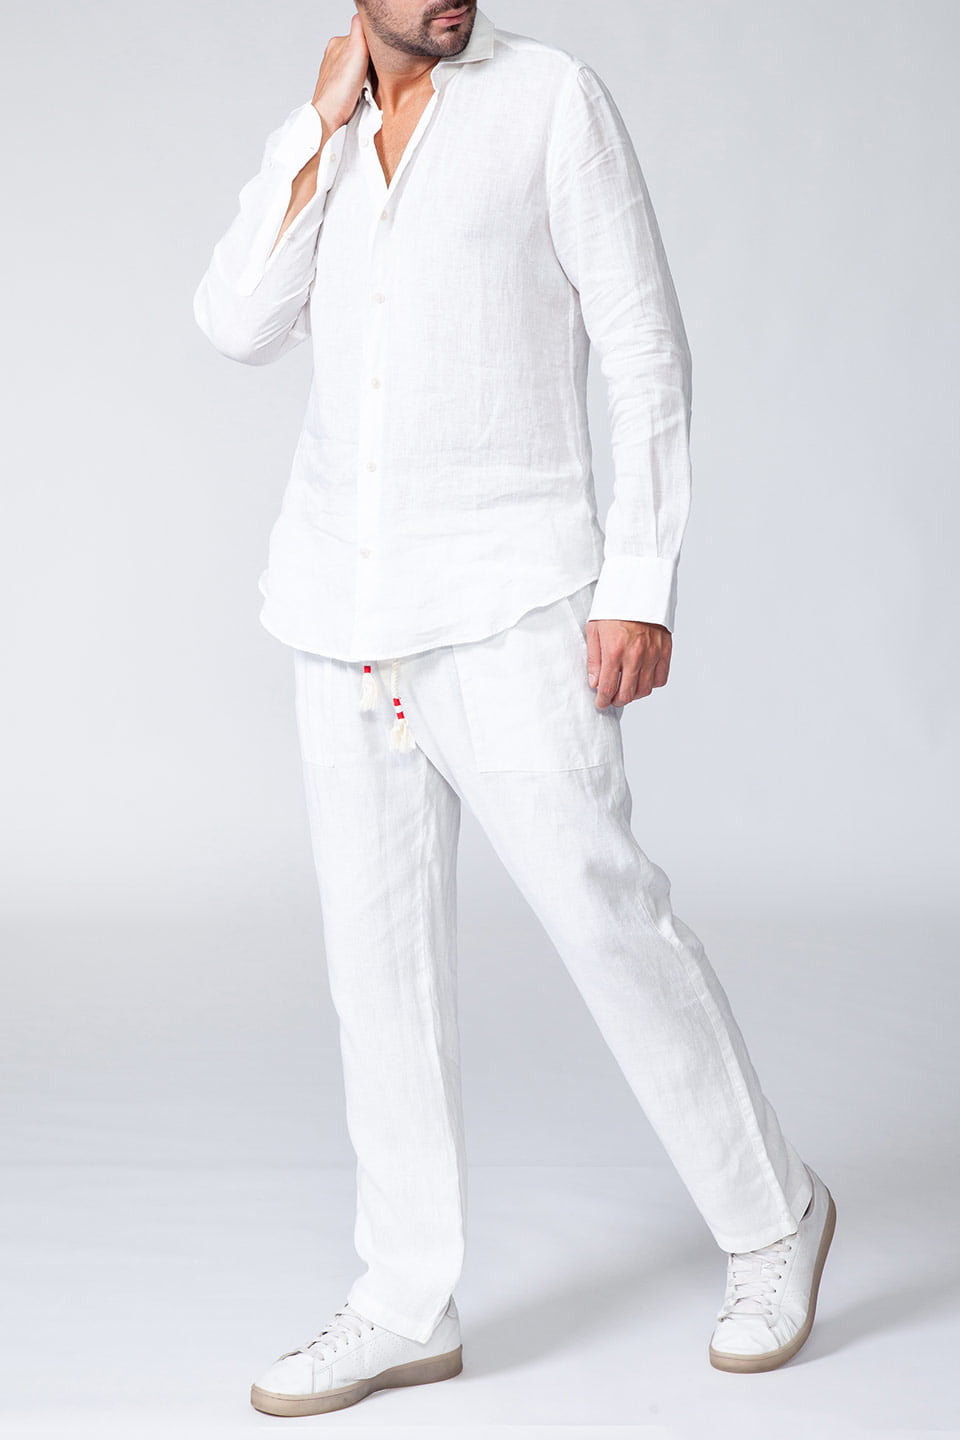 MC2 Saint Barth men linen light shirt with long sleeves in white color, full body